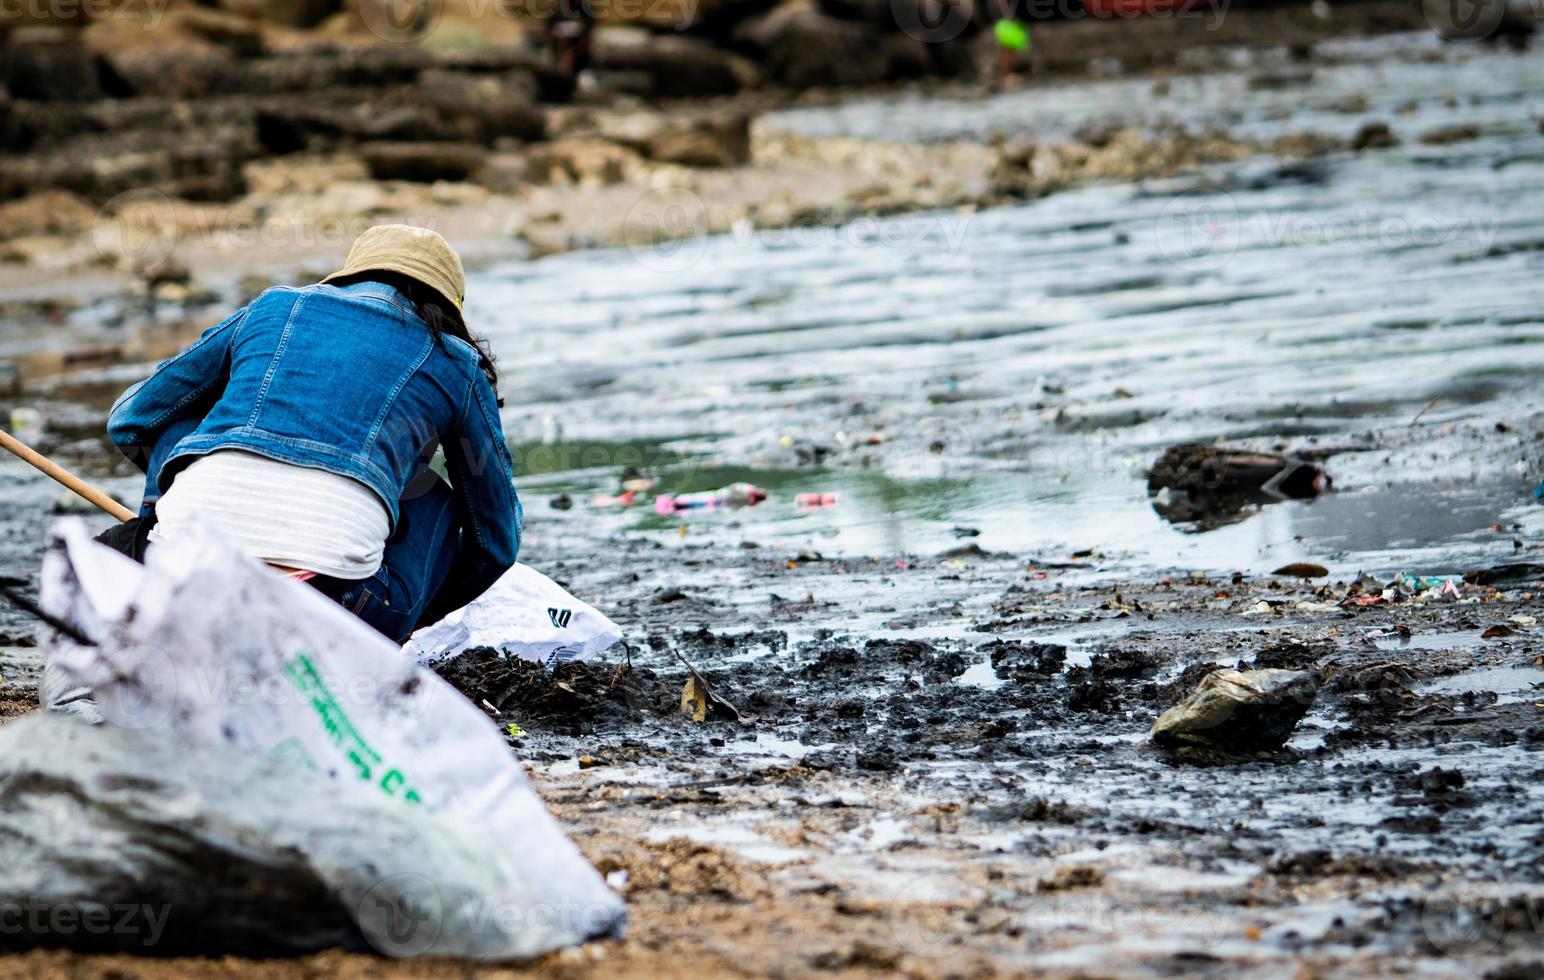 los voluntarios se sientan y recogen basura en la playa. limpiador de playa recogiendo basura en la playa del mar en una bolsa de plástico transparente. voluntarios limpiando la playa. ordenar la basura en la playa. foto